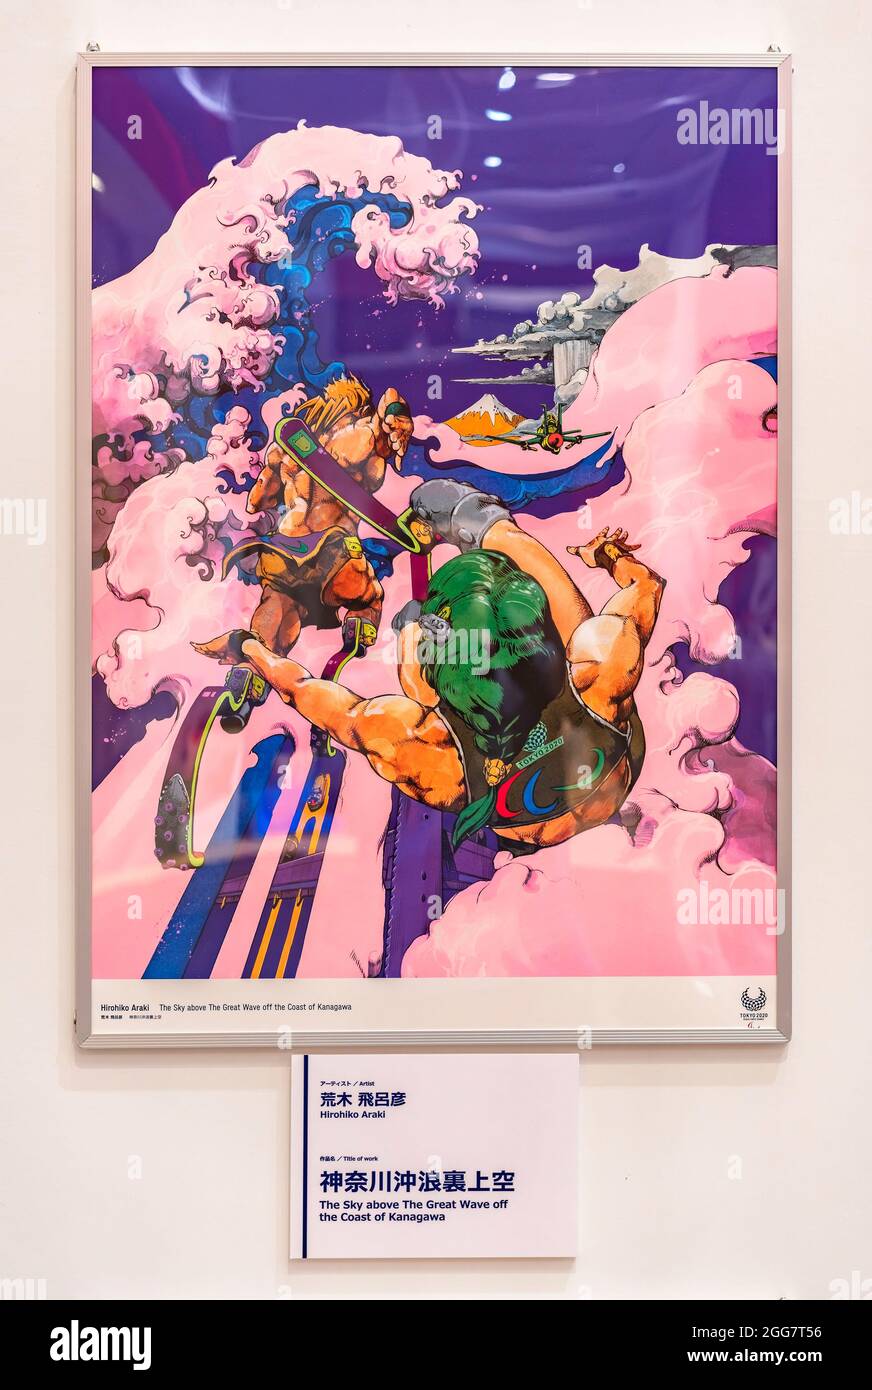 tokyo, giappone - agosto 24 2021: Poster che mostra un'illustrazione della disciplina sportiva di atletica paralimpica dell'artista manga giapponese Hirohiko Araki alla Sp Foto Stock